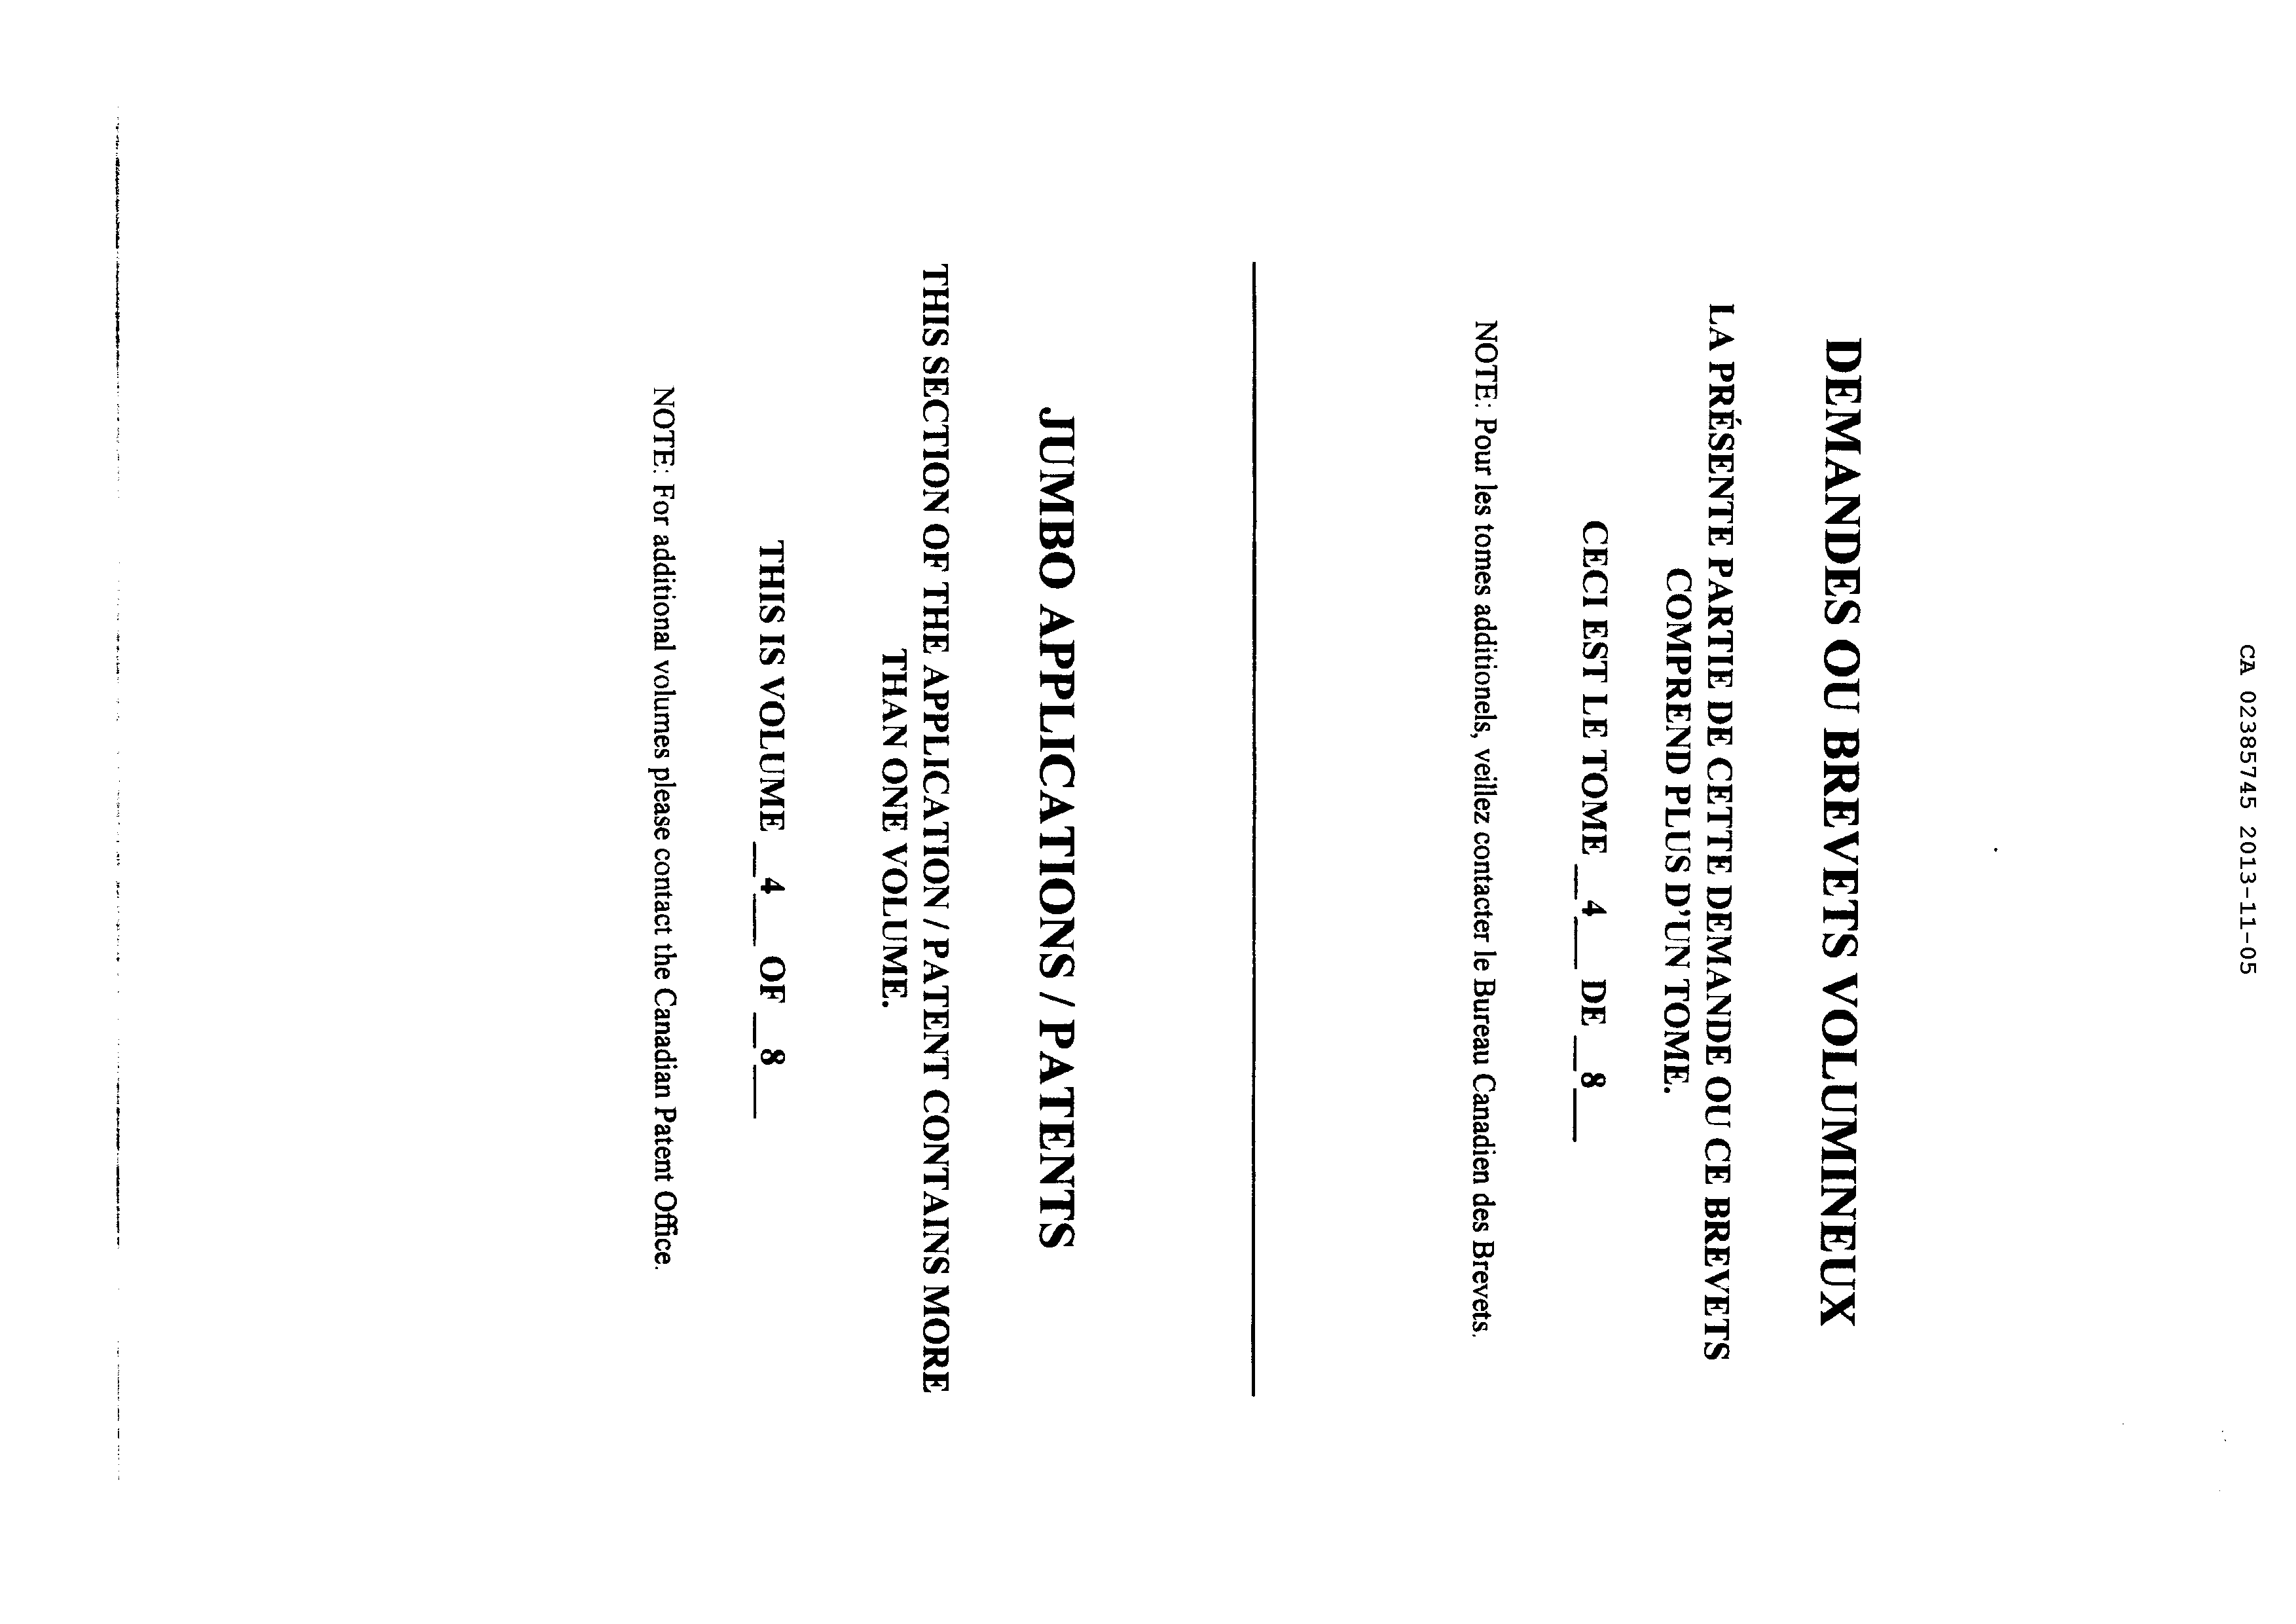 Document de brevet canadien 2385745. Poursuite-Amendment 20121205. Image 1 de 350